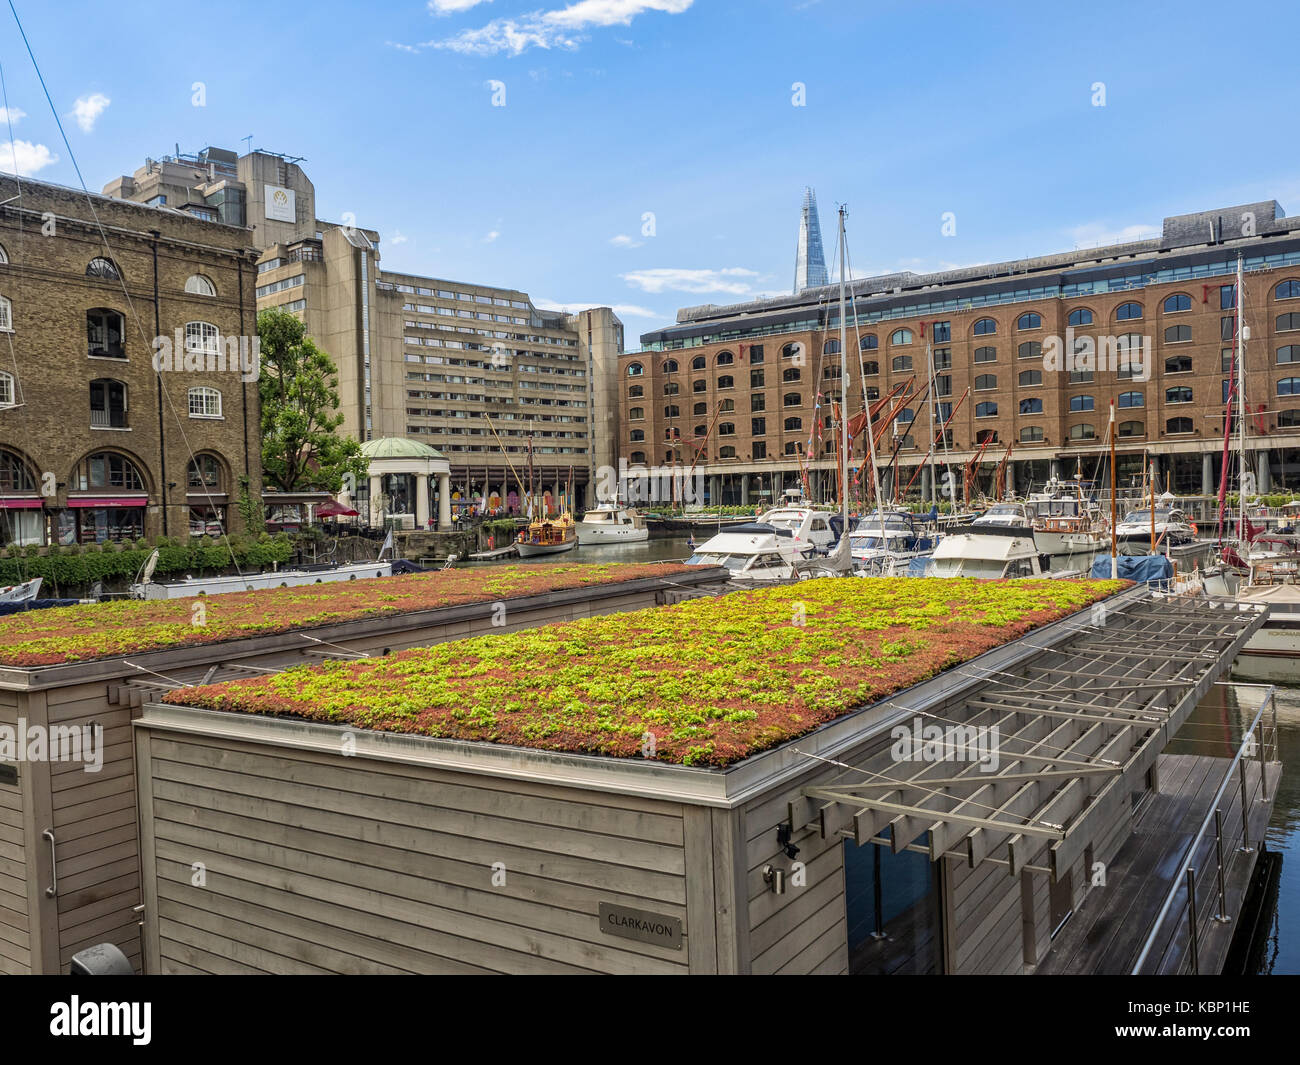 LONDON, Großbritannien - 25. AUGUST 2017: Holzgebäude mit lebendigen grünen Dächern, die mit Sedums in der Marina am S tKatherine Dock bepflanzt wurden Stockfoto